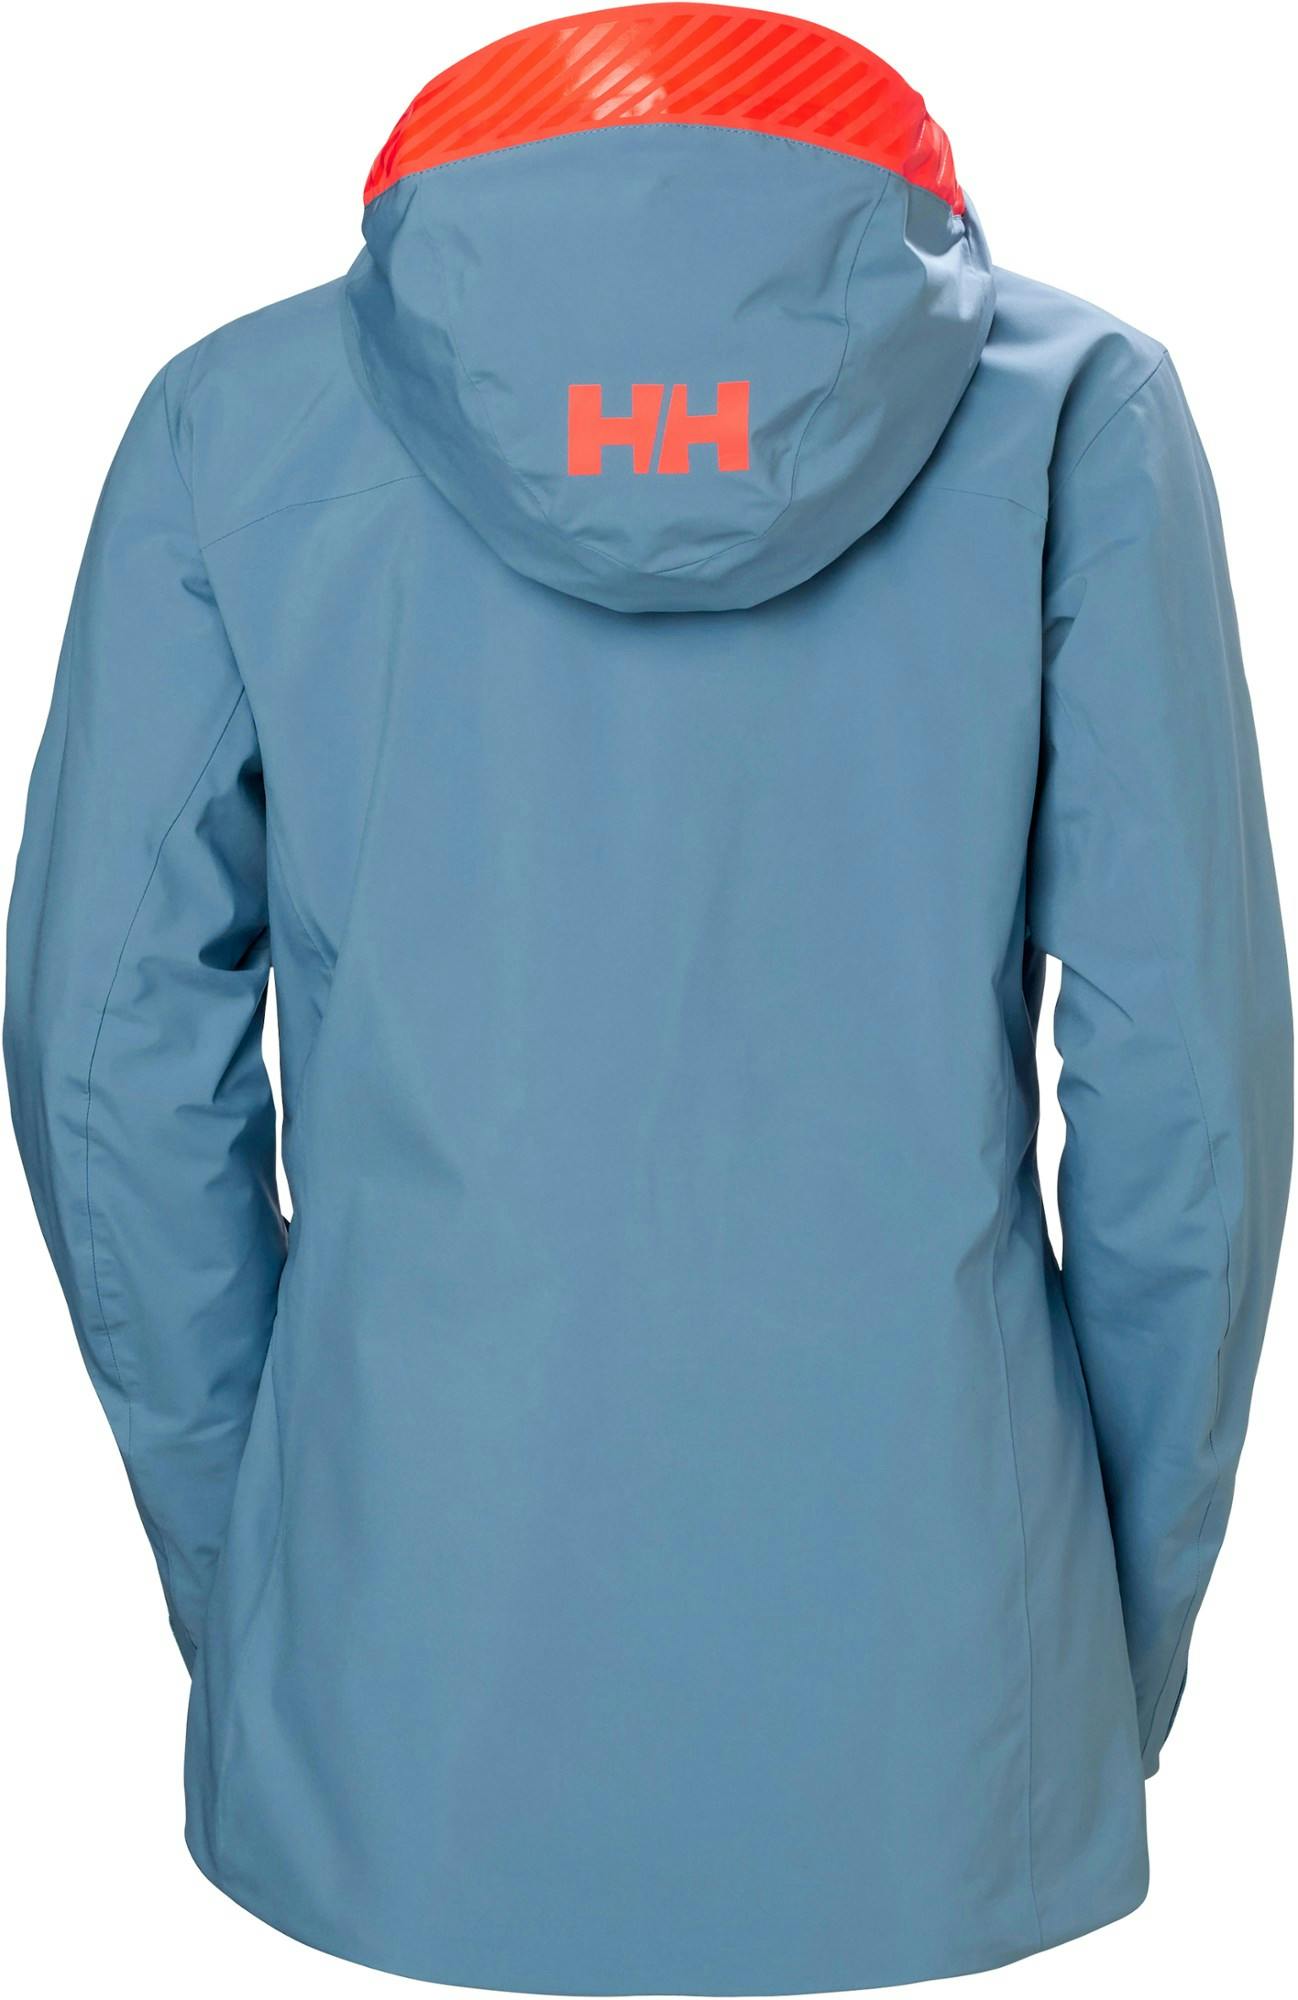 Helly Hansen Women's Powderqueen Infinity Jacket